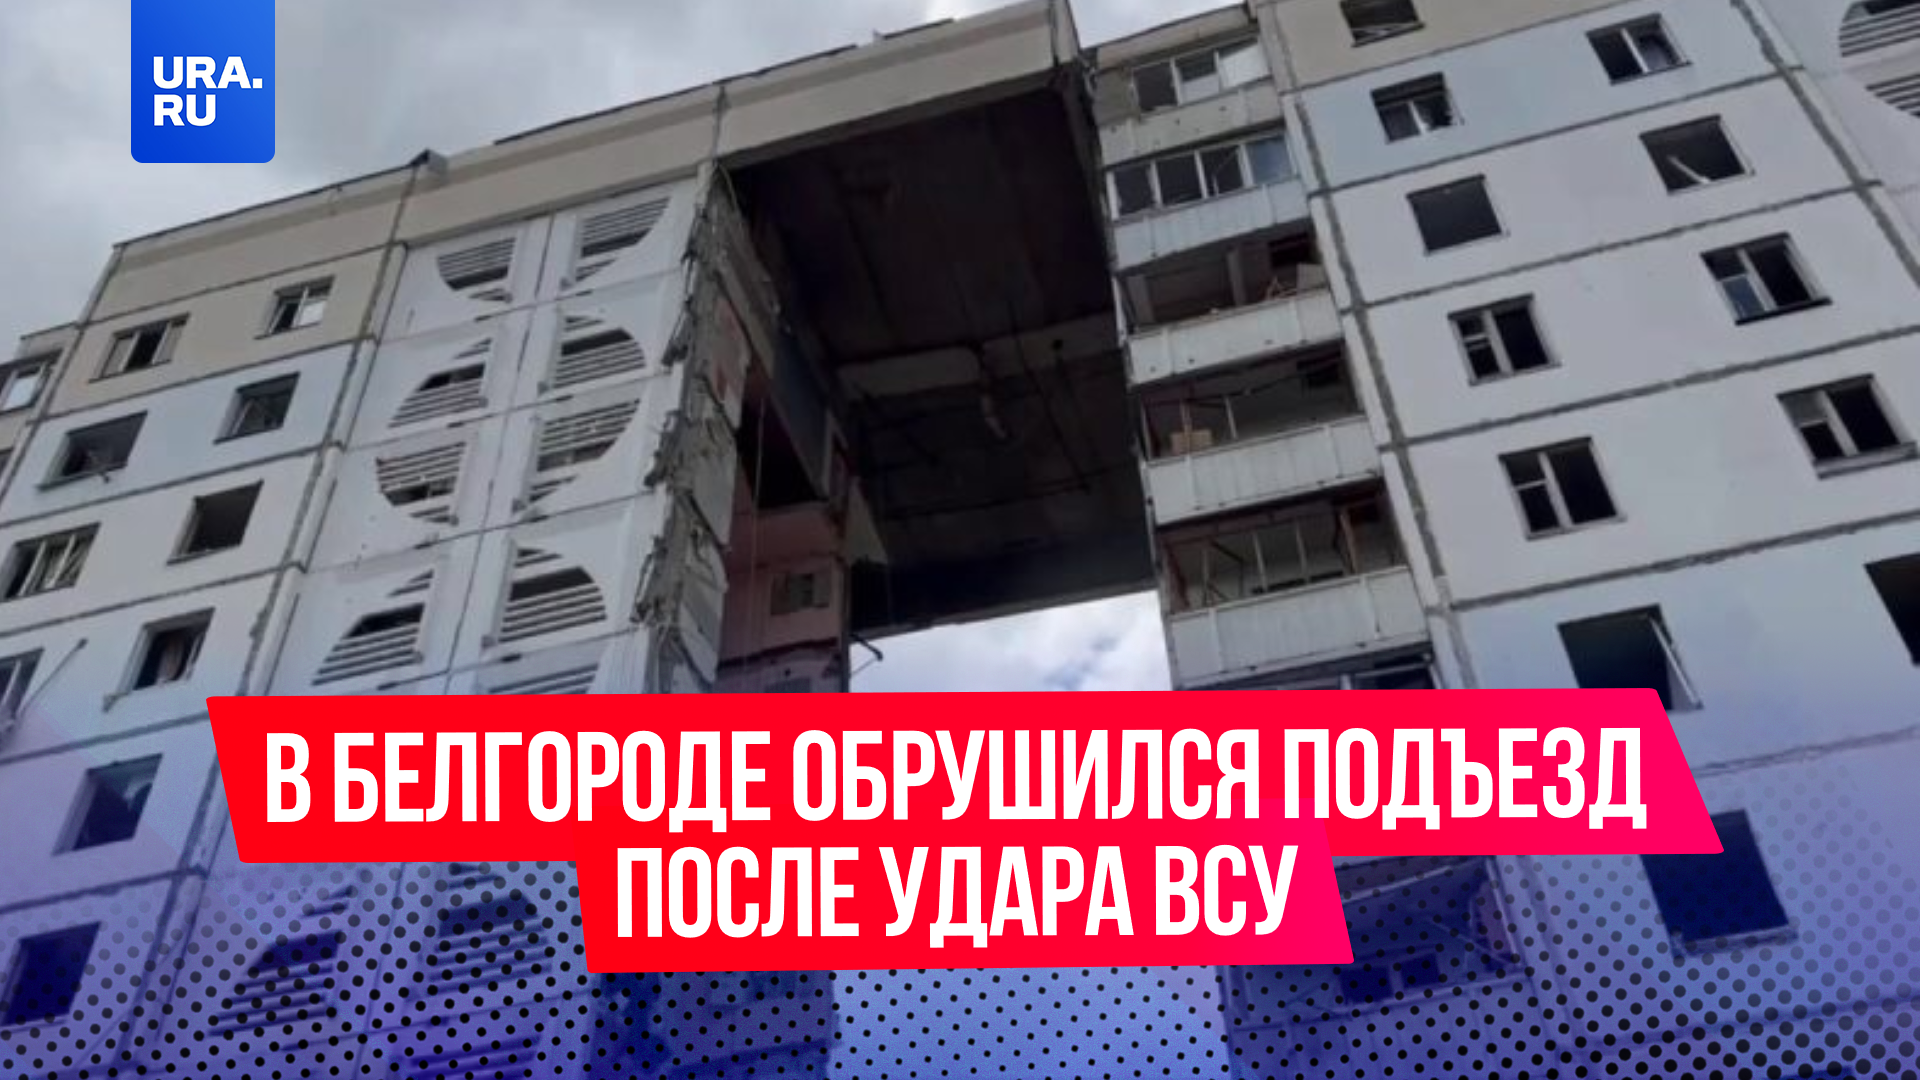 Подъезд жилого дома обрушился в Белгороде после удара ВСУ